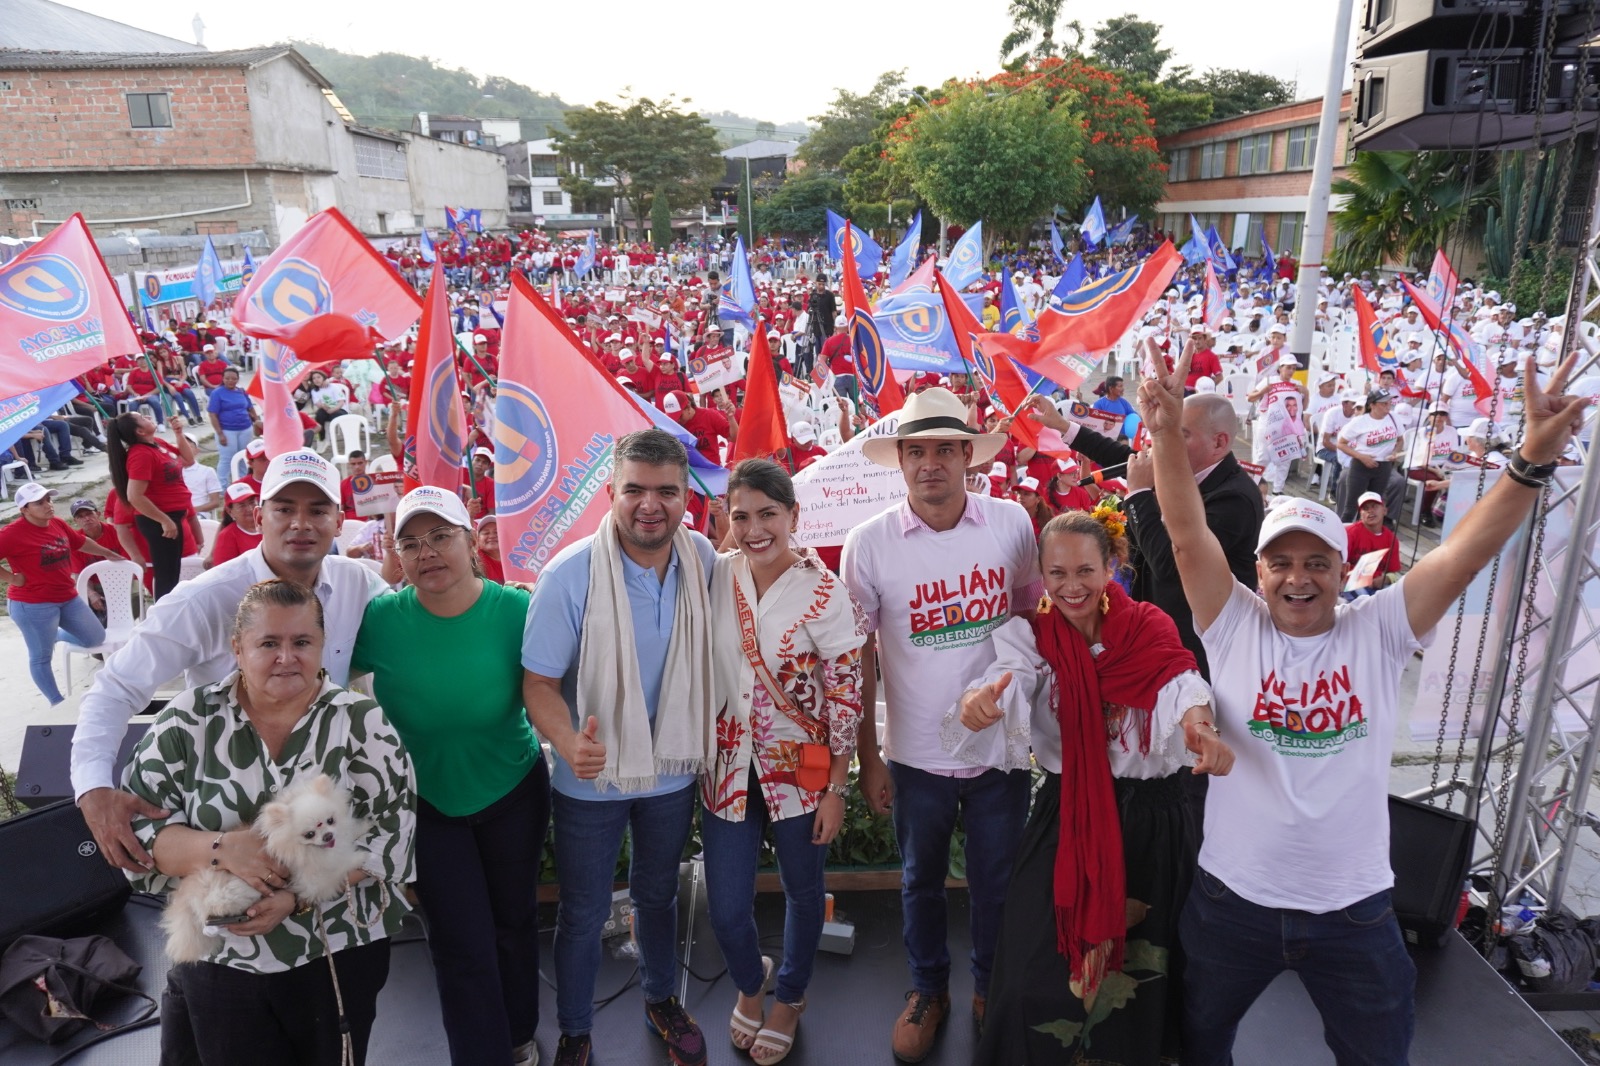 Julián Bedoya le propone al gobierno nacional que títulos mineros de Antioquia sean entregados solo a connacionales